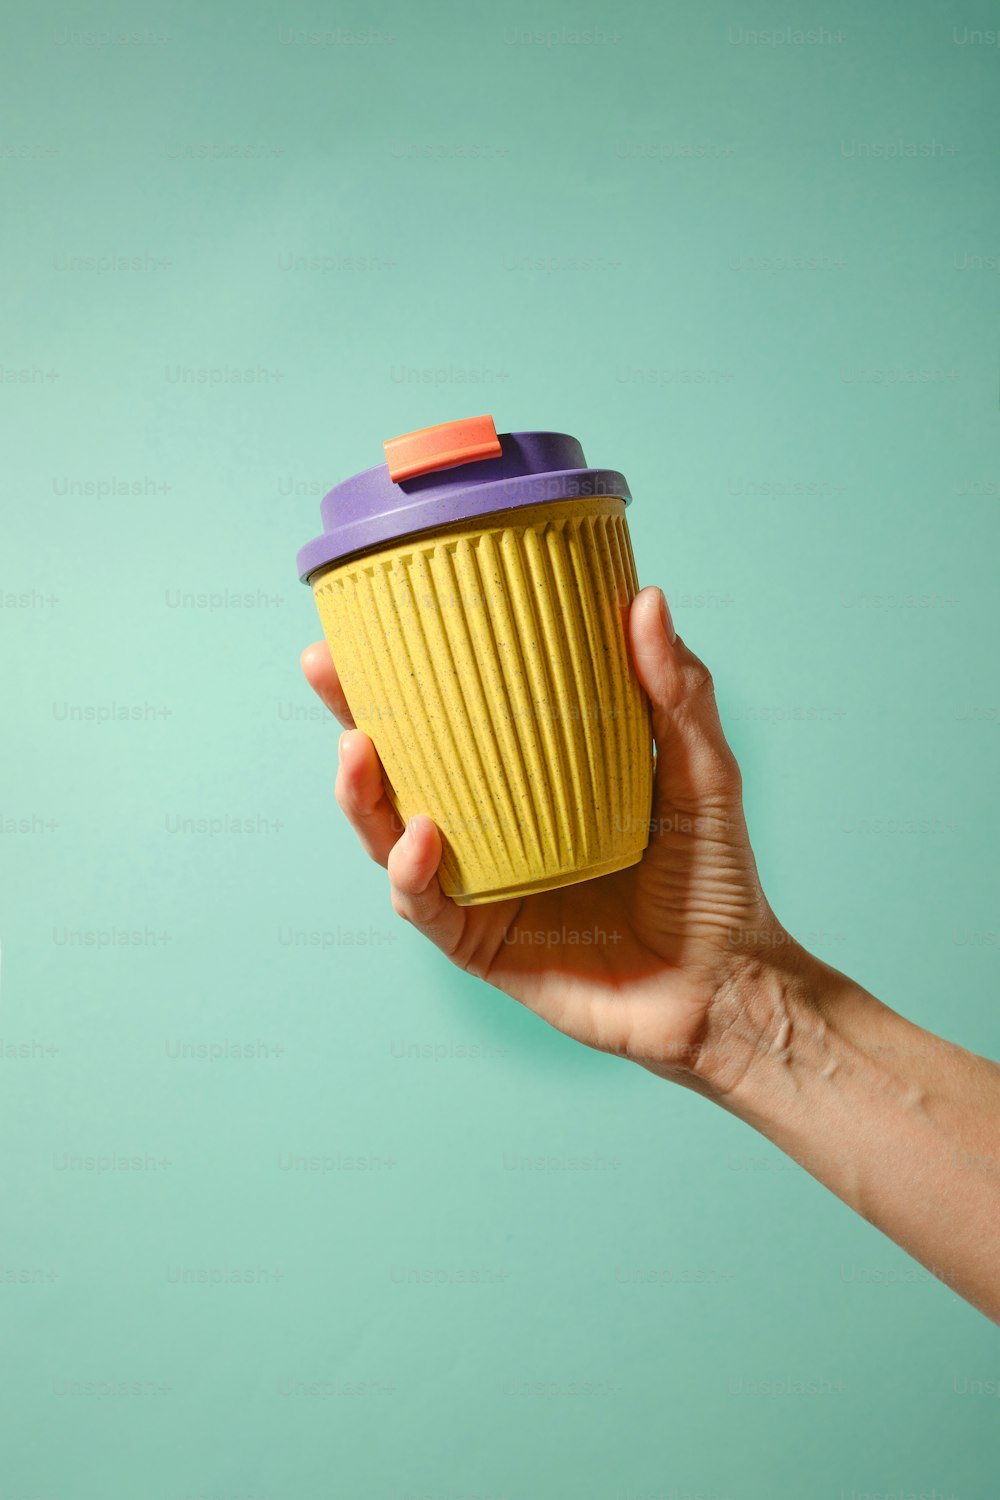 uma mão segurando um copo amarelo com uma tampa roxa